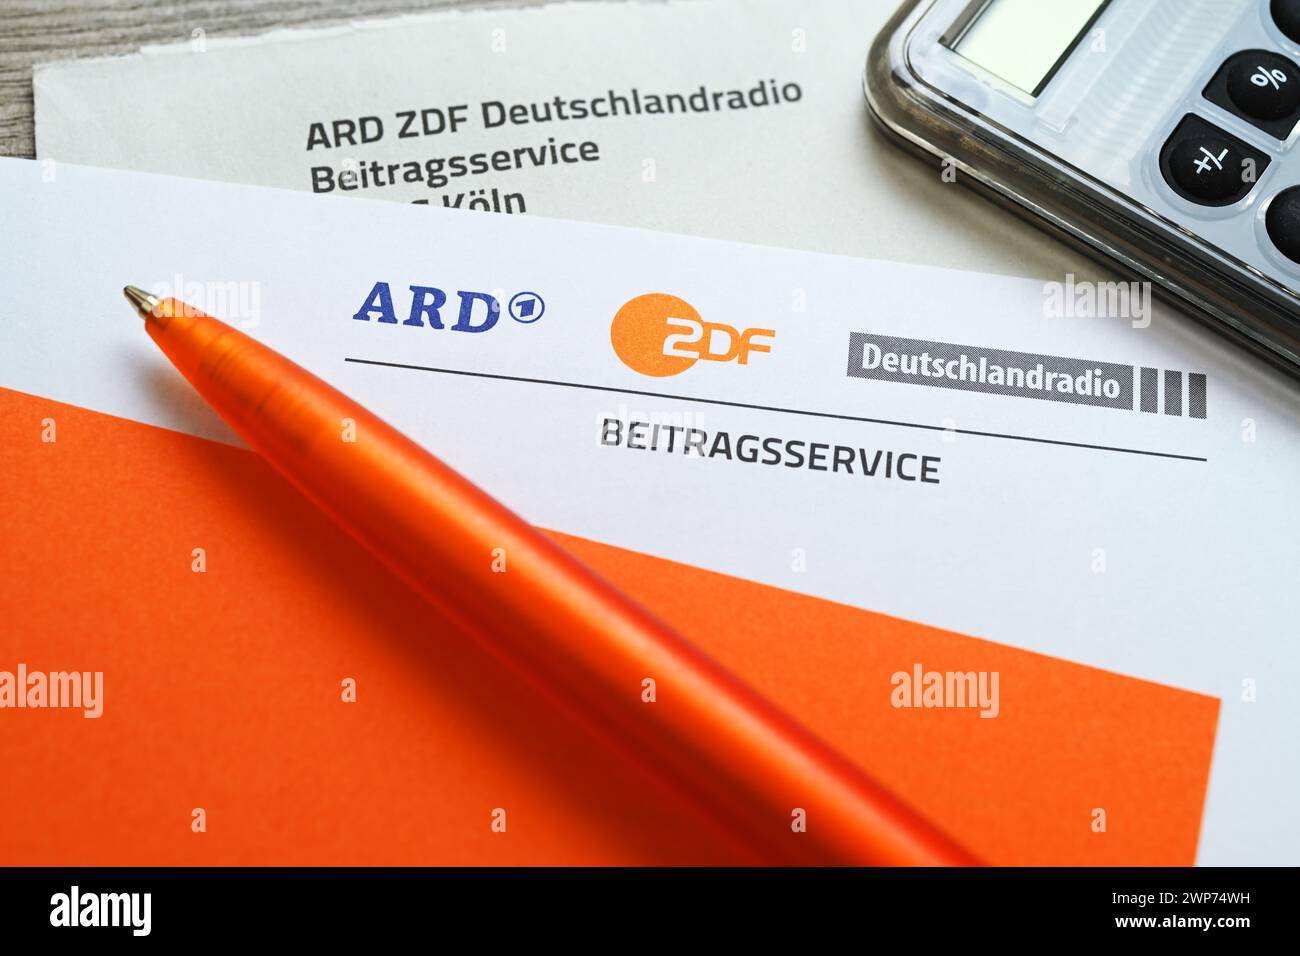 Brief des ARD ZDF Deutschlandradio Beitragsservice mit Taschenrechner, Symbolfoto Erhöhung des Rundfunkbeitrags Stock Photo